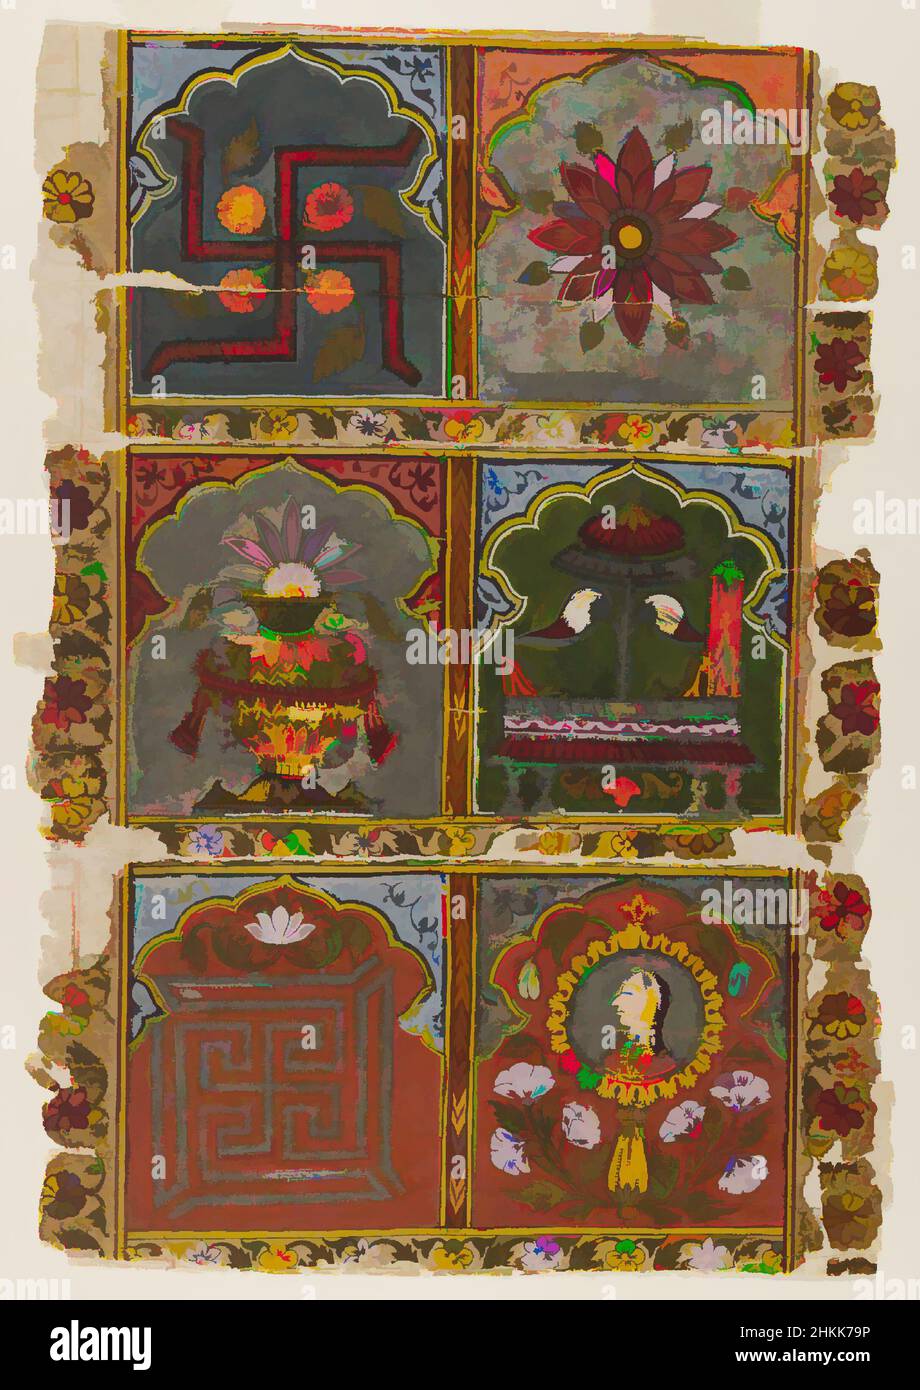 Kunst inspiriert von Fragment eines Jain Vijnaptipatra, indisch, opakes Aquarell auf Papier, Rajasthan, Indien, ca. 1725-1750, Blatt: 12 1/2 x 8 5/8 Zoll, 31,8 x 21,9 cm, Ashtamangala, Bhadrasana, Darpana, Blumen, Einladung, Jain, Kalasha, Lotus, Mewar School, Spiegel, Mönche, Nandyavarta, Papier, Klassische Werke, die von Artotop mit einem Schuss Moderne modernisiert wurden. Formen, Farbe und Wert, auffällige visuelle Wirkung auf Kunst. Emotionen durch Freiheit von Kunstwerken auf zeitgemäße Weise. Eine zeitlose Botschaft, die eine wild kreative neue Richtung verfolgt. Künstler, die sich dem digitalen Medium zuwenden und die Artotop NFT erschaffen Stockfoto